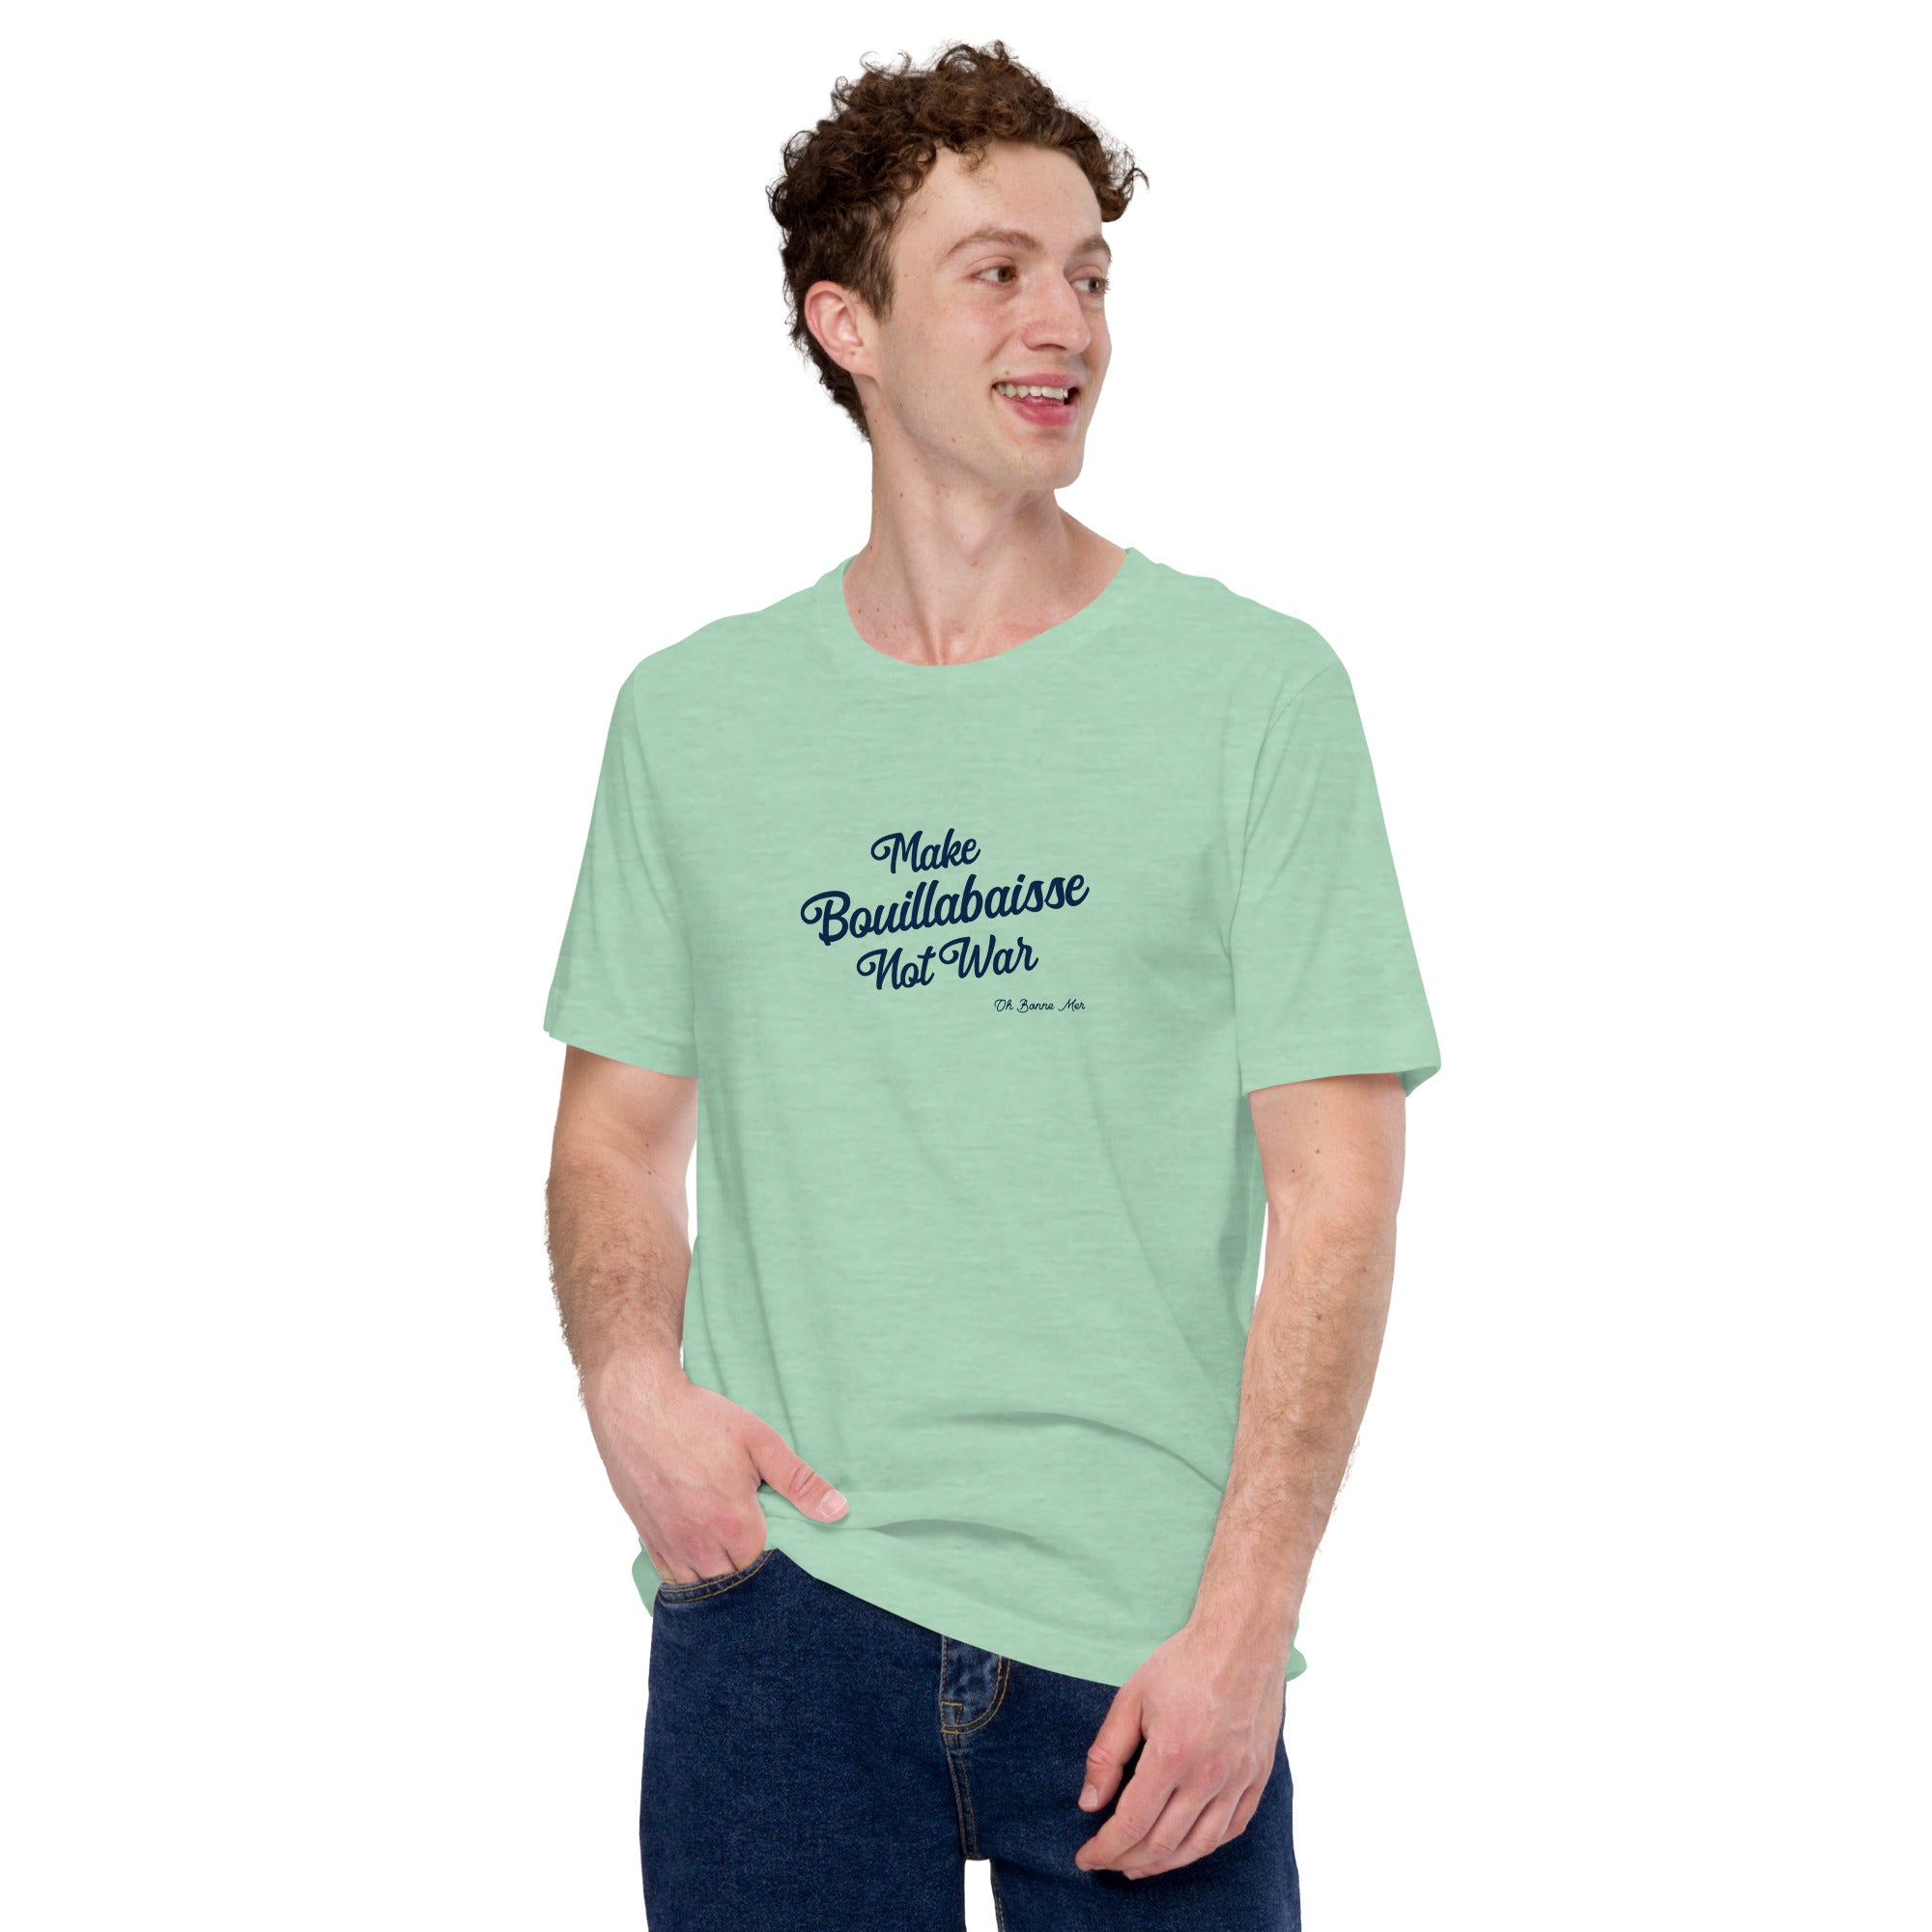 T-shirt en coton unisexe Make Bouillabaisse Not War Text Only sur couleurs chinées claires